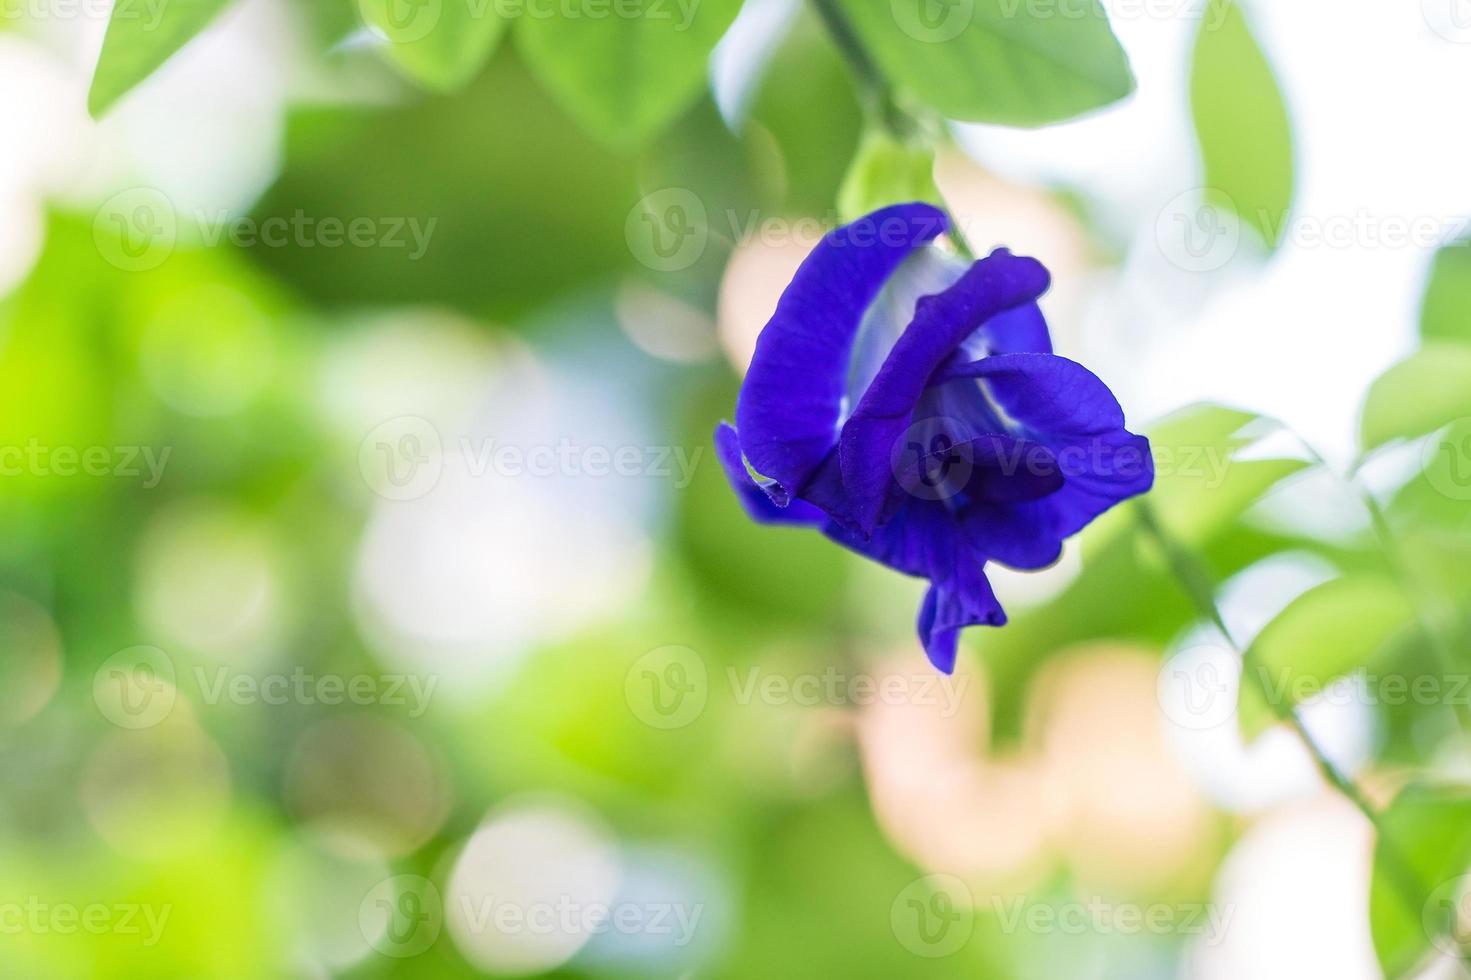 fjärilsärtblommor är naturligt vackra blålila blommor. den kan användas som en livsmedelsfärg som innehåller antocyanin. foto